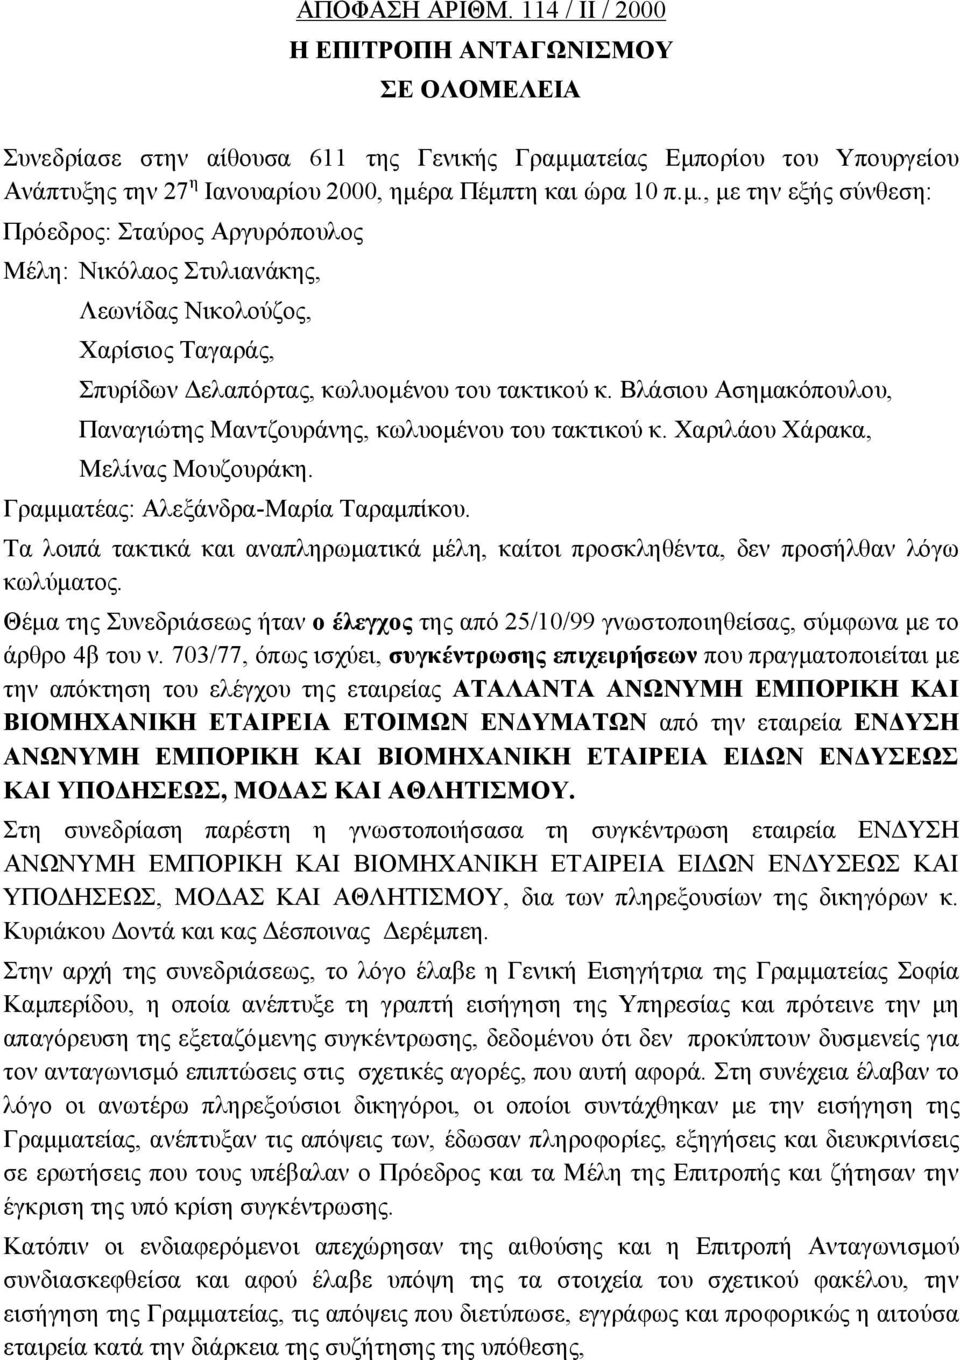 ατείας Εμπορίου του Υπουργείου Ανάπτυξης την 27 η Ιανουαρίου 2000, ημέρα Πέμπτη και ώρα 10 π.μ., με την εξής σύνθεση: Πρόεδρος: Σταύρος Αργυρόπουλος Μέλη: Νικόλαος Στυλιανάκης, Λεωνίδας Νικολούζος, Χαρίσιος Ταγαράς, Σπυρίδων Δελαπόρτας, κωλυομένου του τακτικού κ.